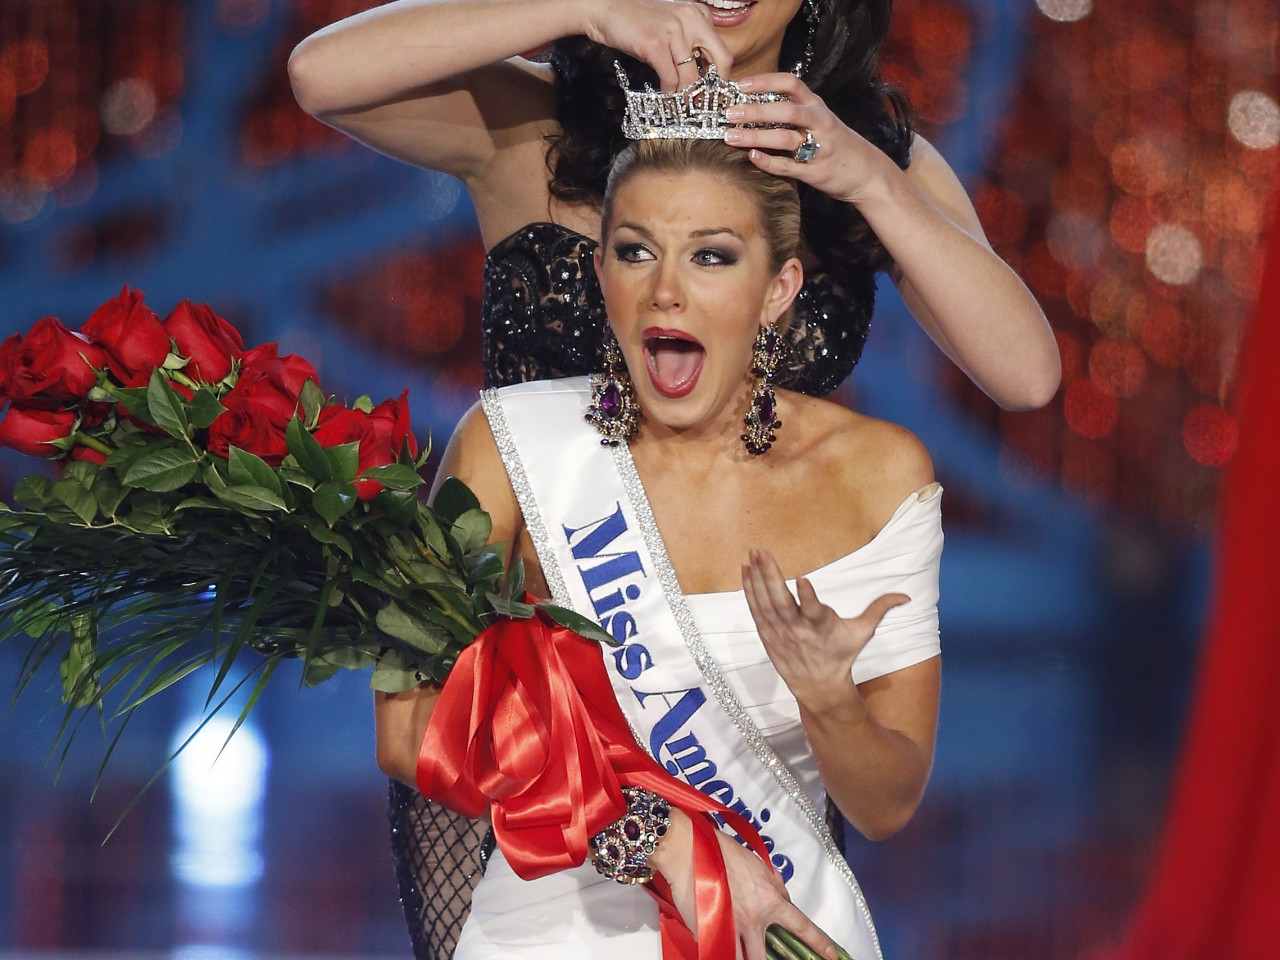 Miss America 2013 Mallory Hagan 92d21b80